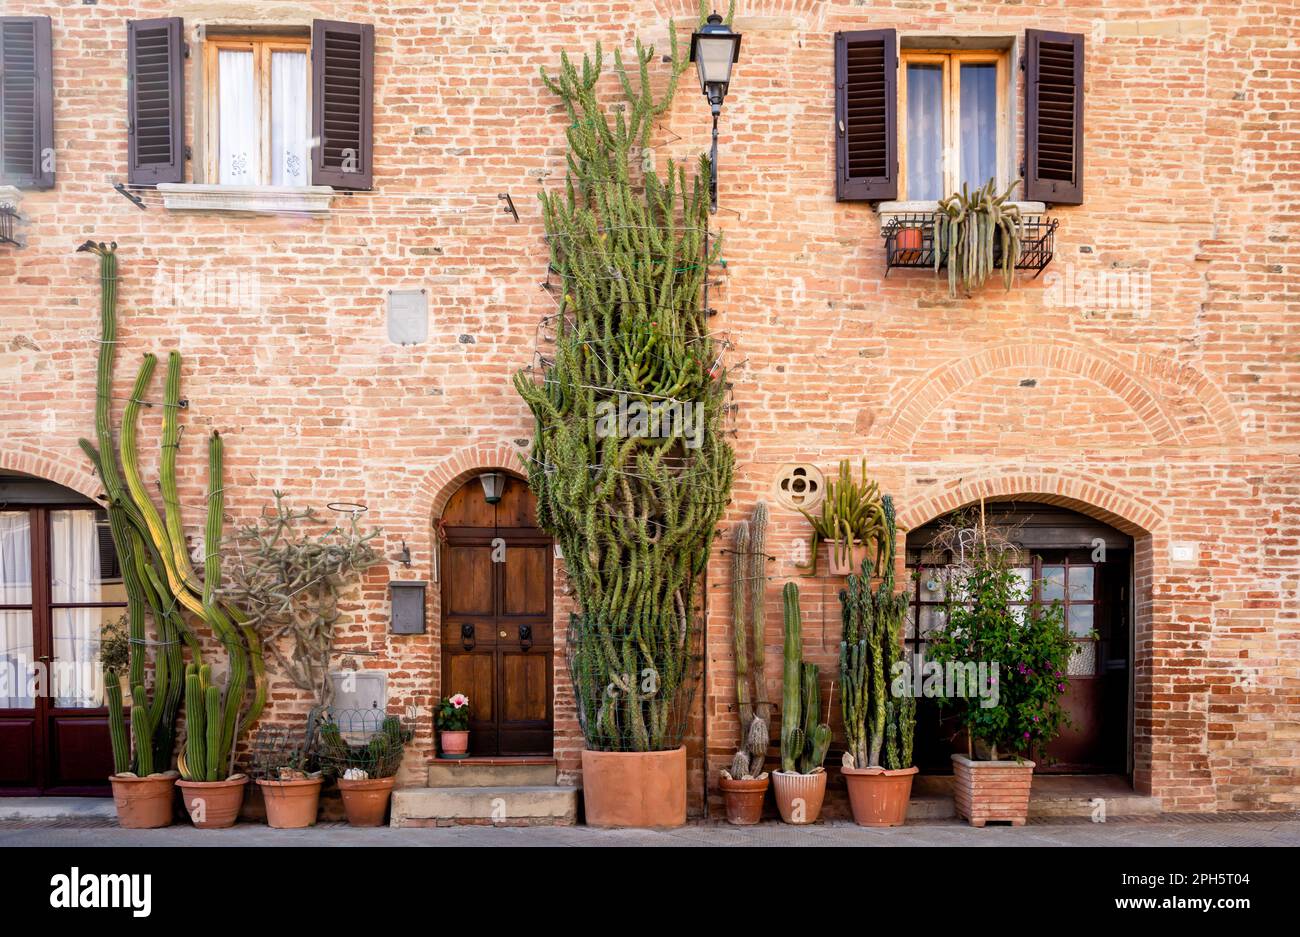 Mittelalterliche Stadt Gambassi Terme: Charakteristisches historisches Gebäude mit saftigen Pflanzen - Gambassi Terme, Provinz Firenze, Toskana, Italien - 1. juni 2021 Stockfoto